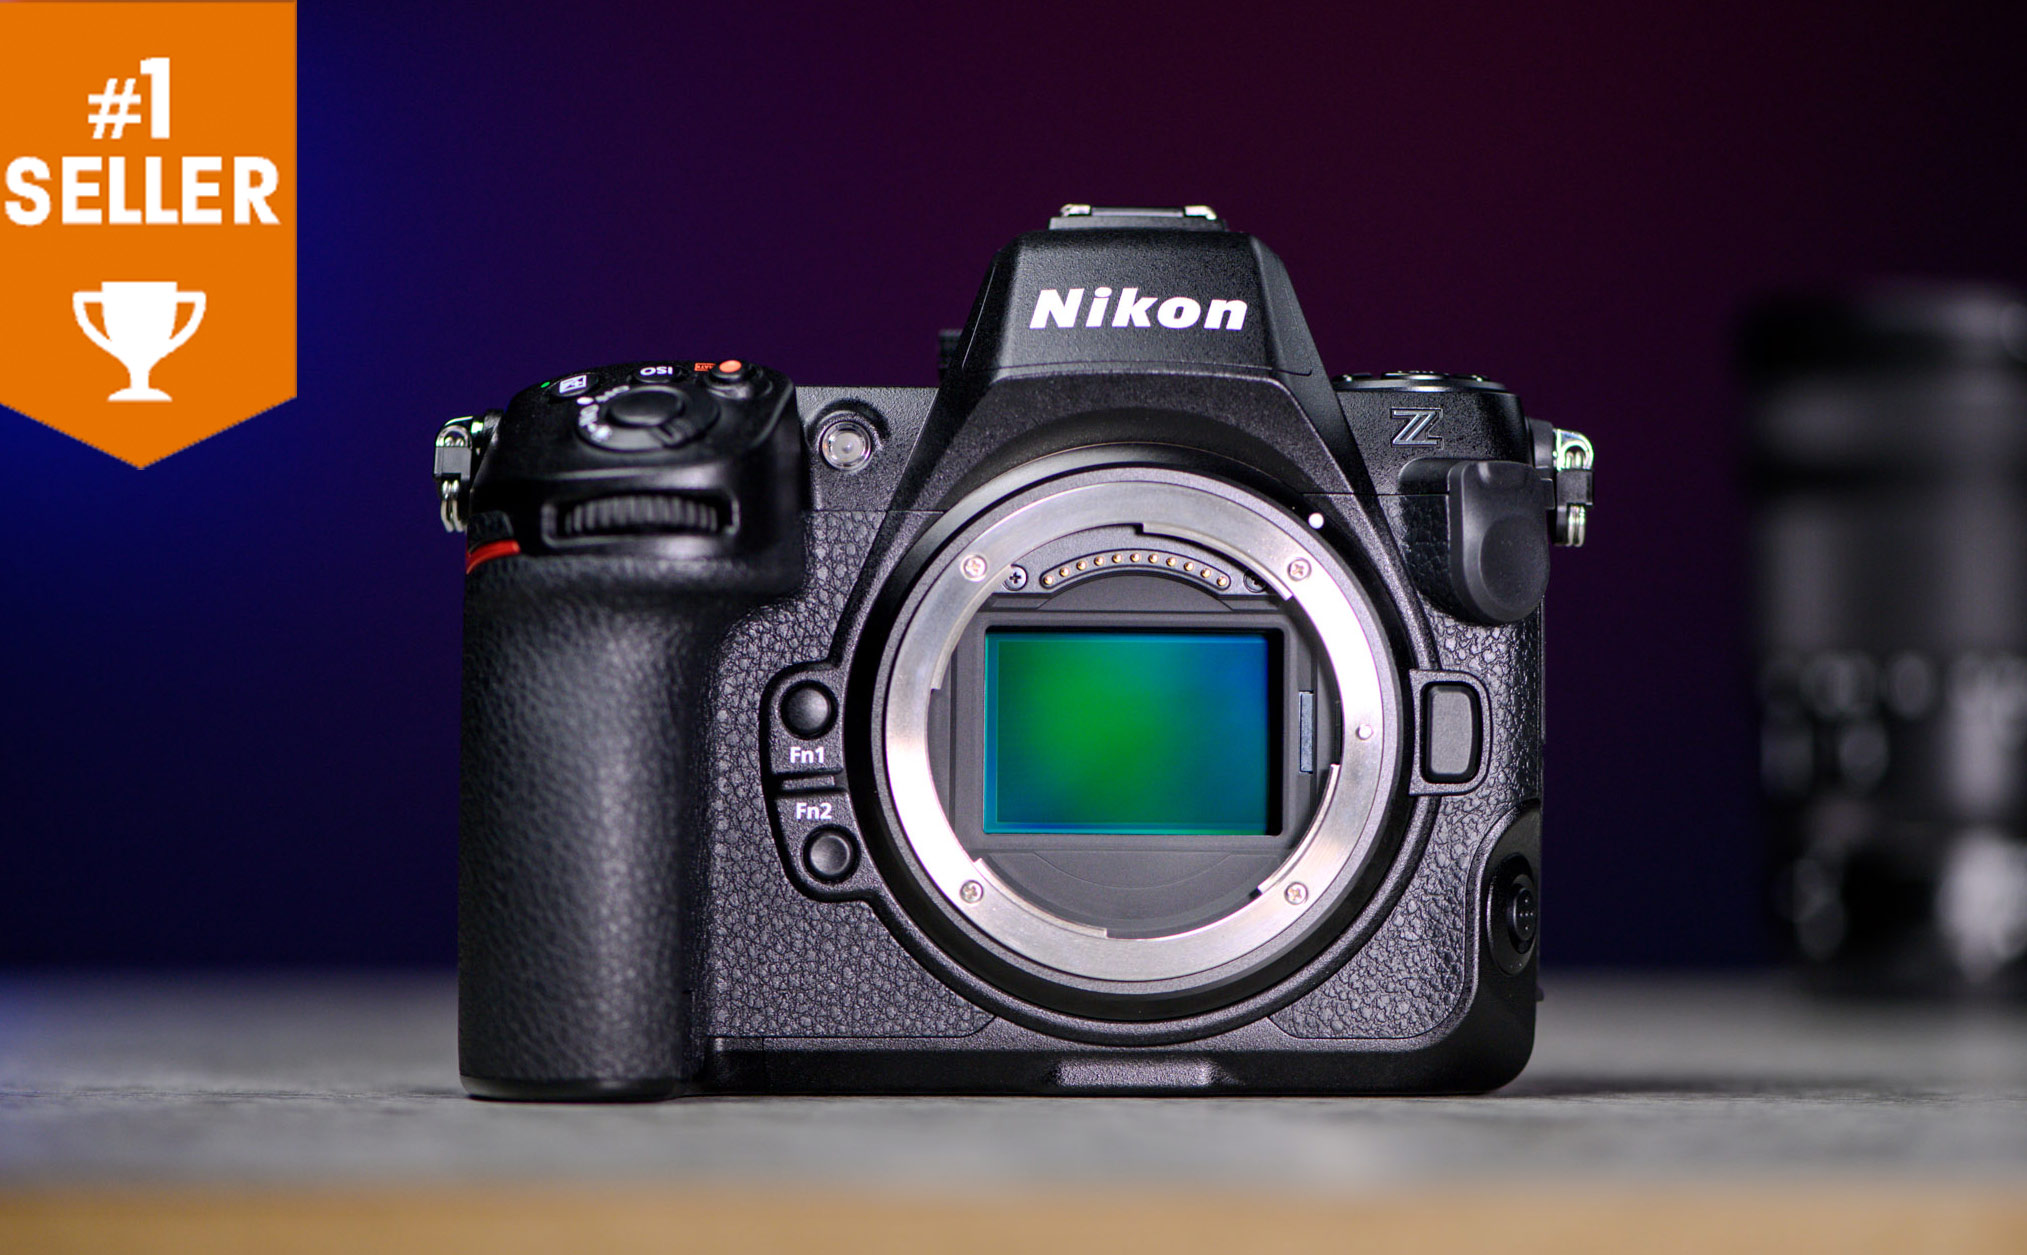 Z8 giúp doanh số Nikon tăng trưởng, top 1 bán chạy B&H